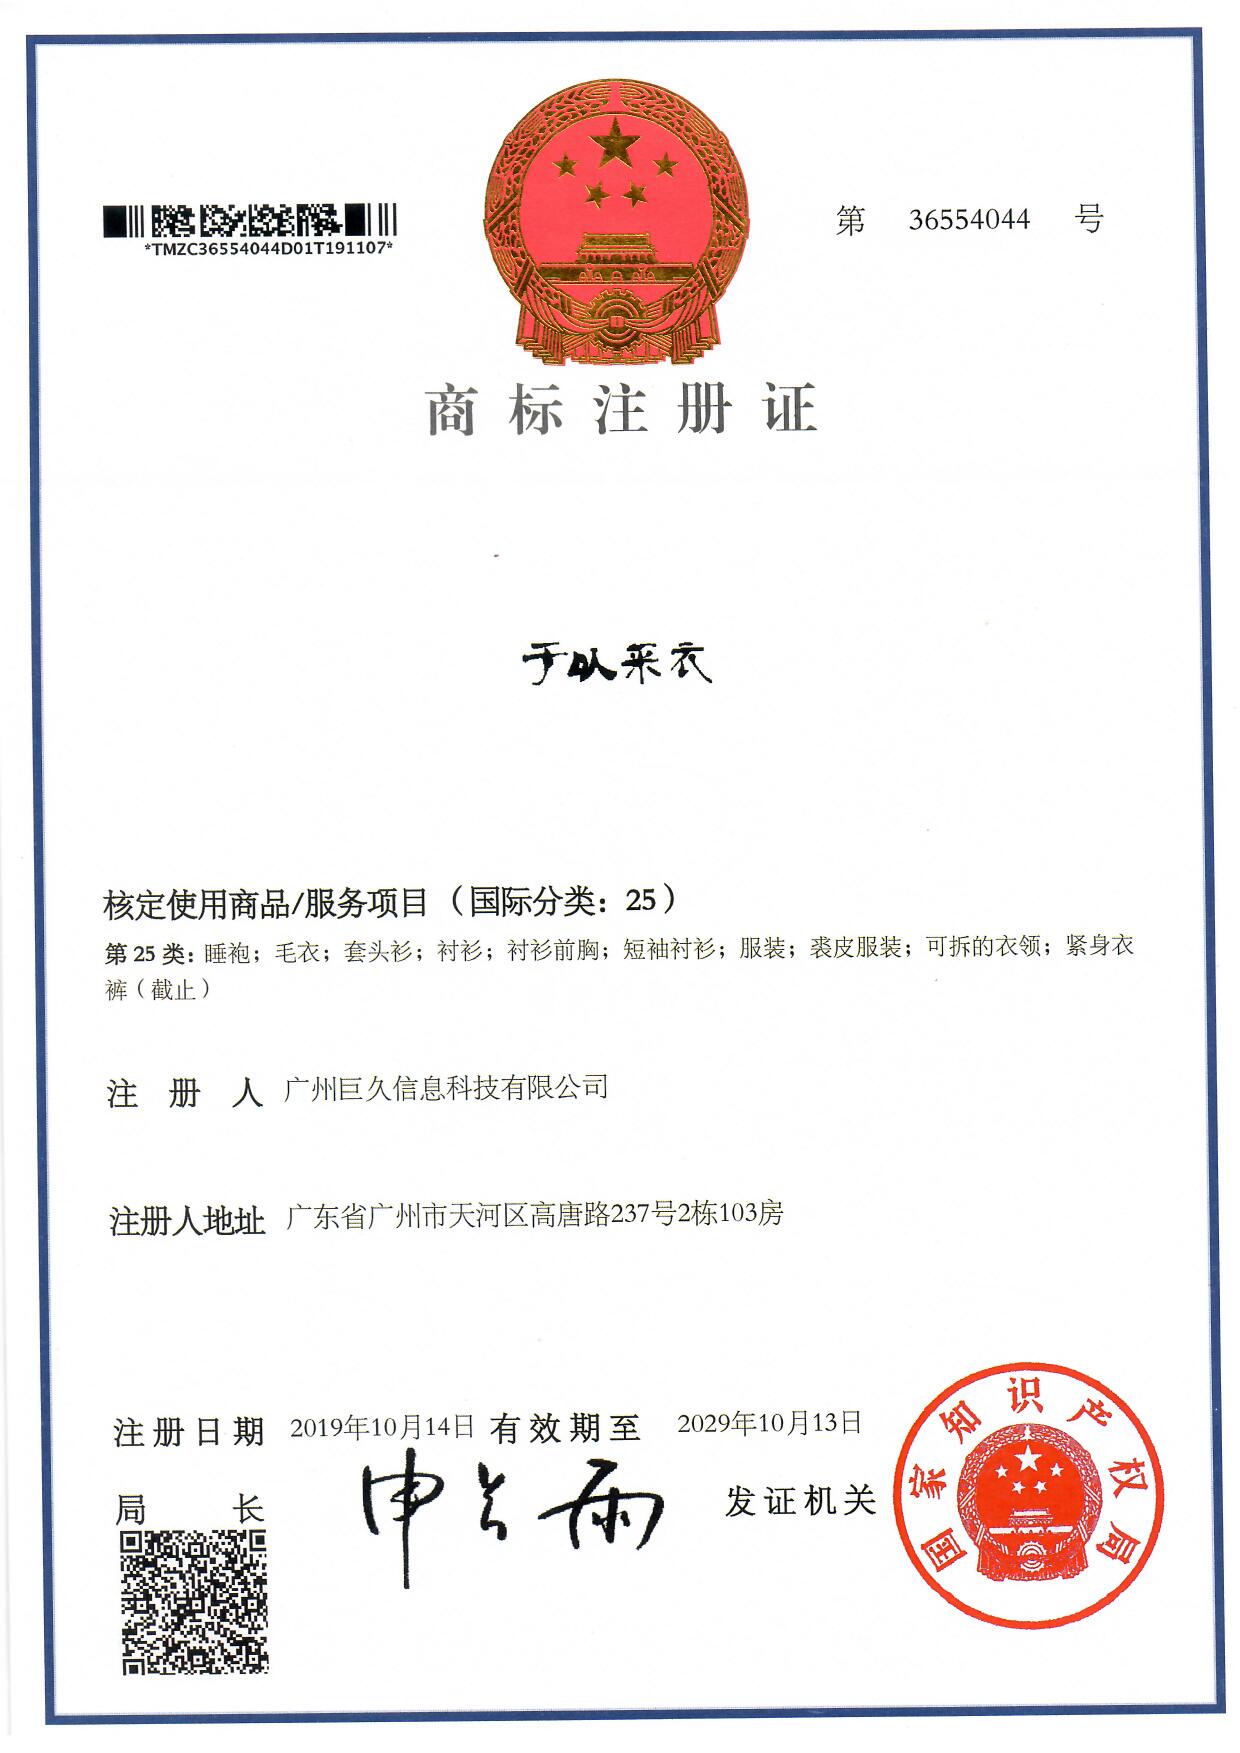 广州巨久信息科技有限公司商标证书36554044.jpg